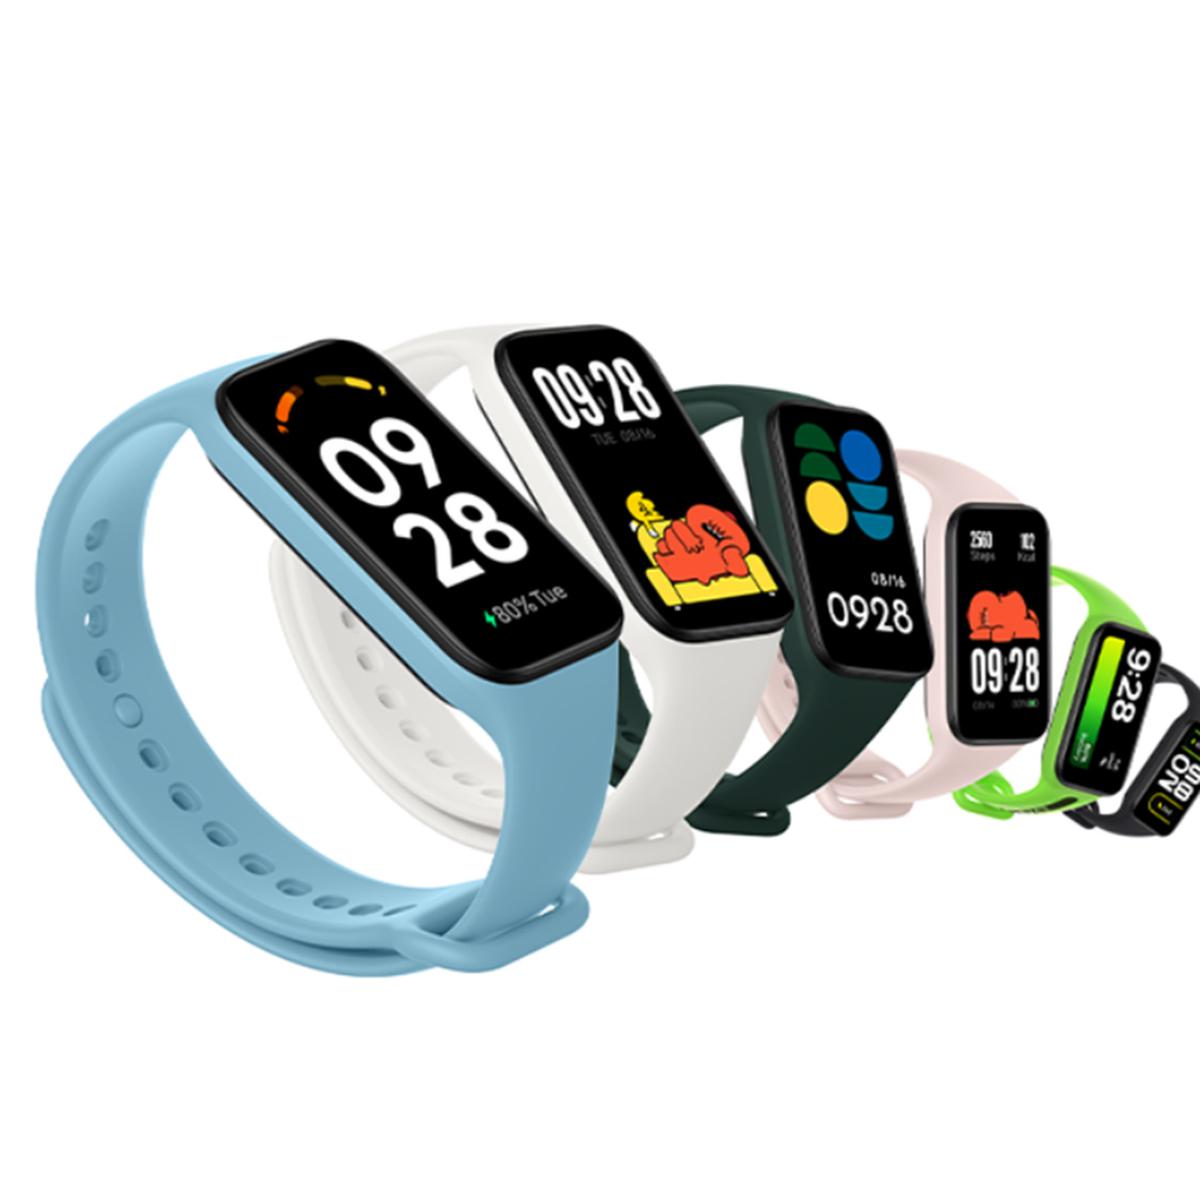 Nuevo Redmi Watch 2: características y precio